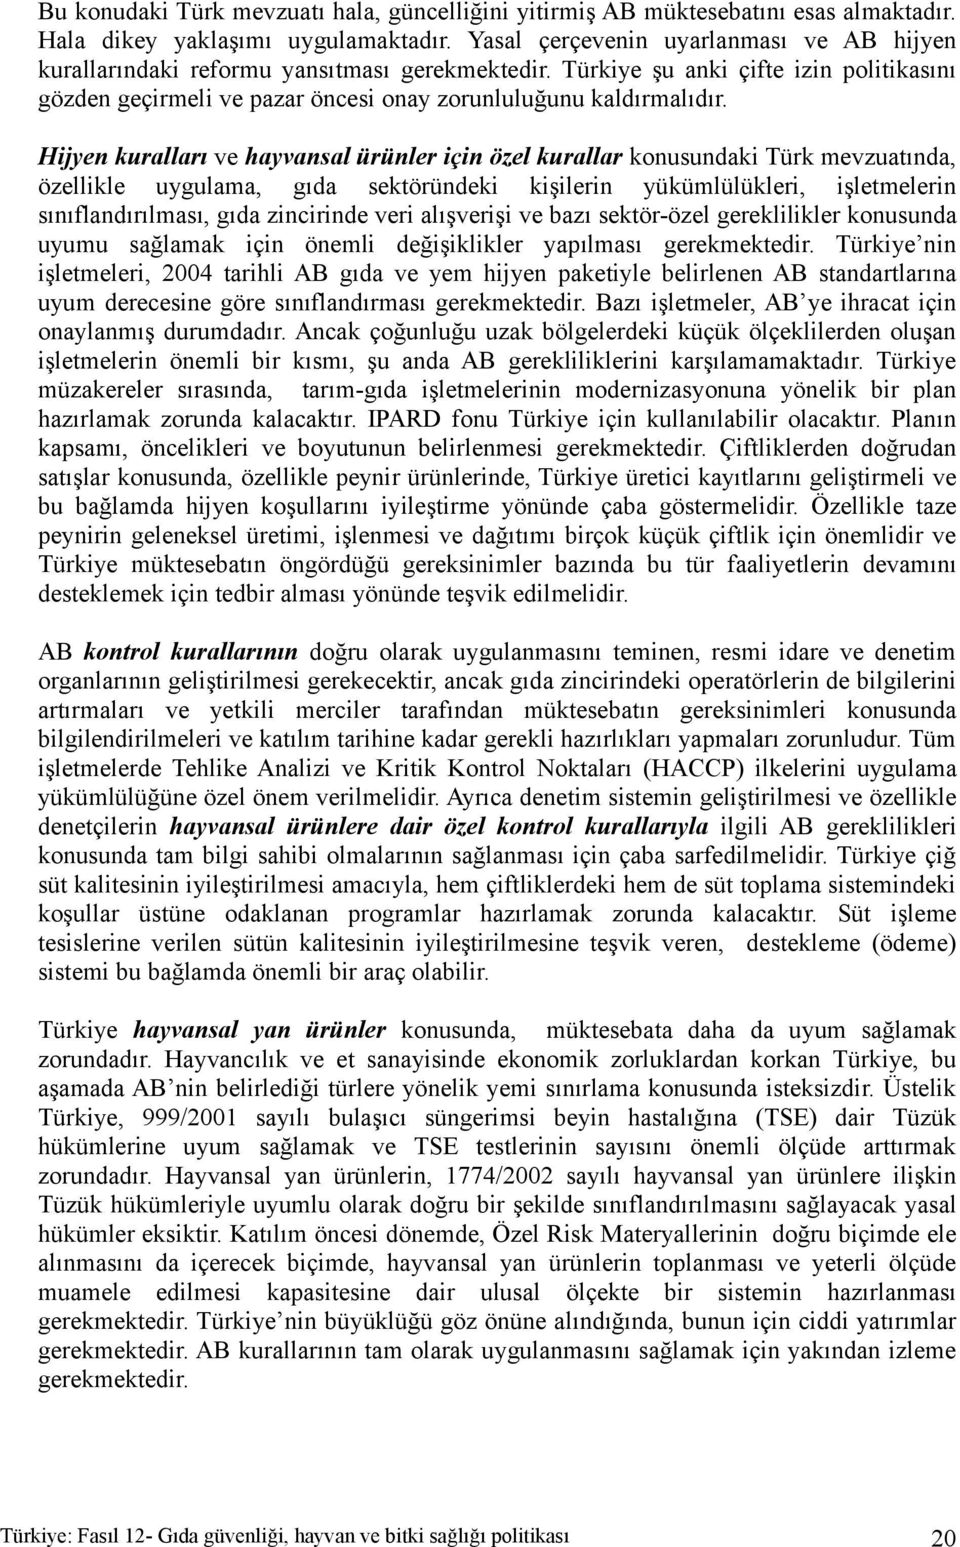 Hijyen kuralları ve hayvansal ürünler için özel kurallar konusundaki Türk mevzuatında, özellikle uygulama, gıda sektöründeki kişilerin yükümlülükleri, işletmelerin sınıflandırılması, gıda zincirinde